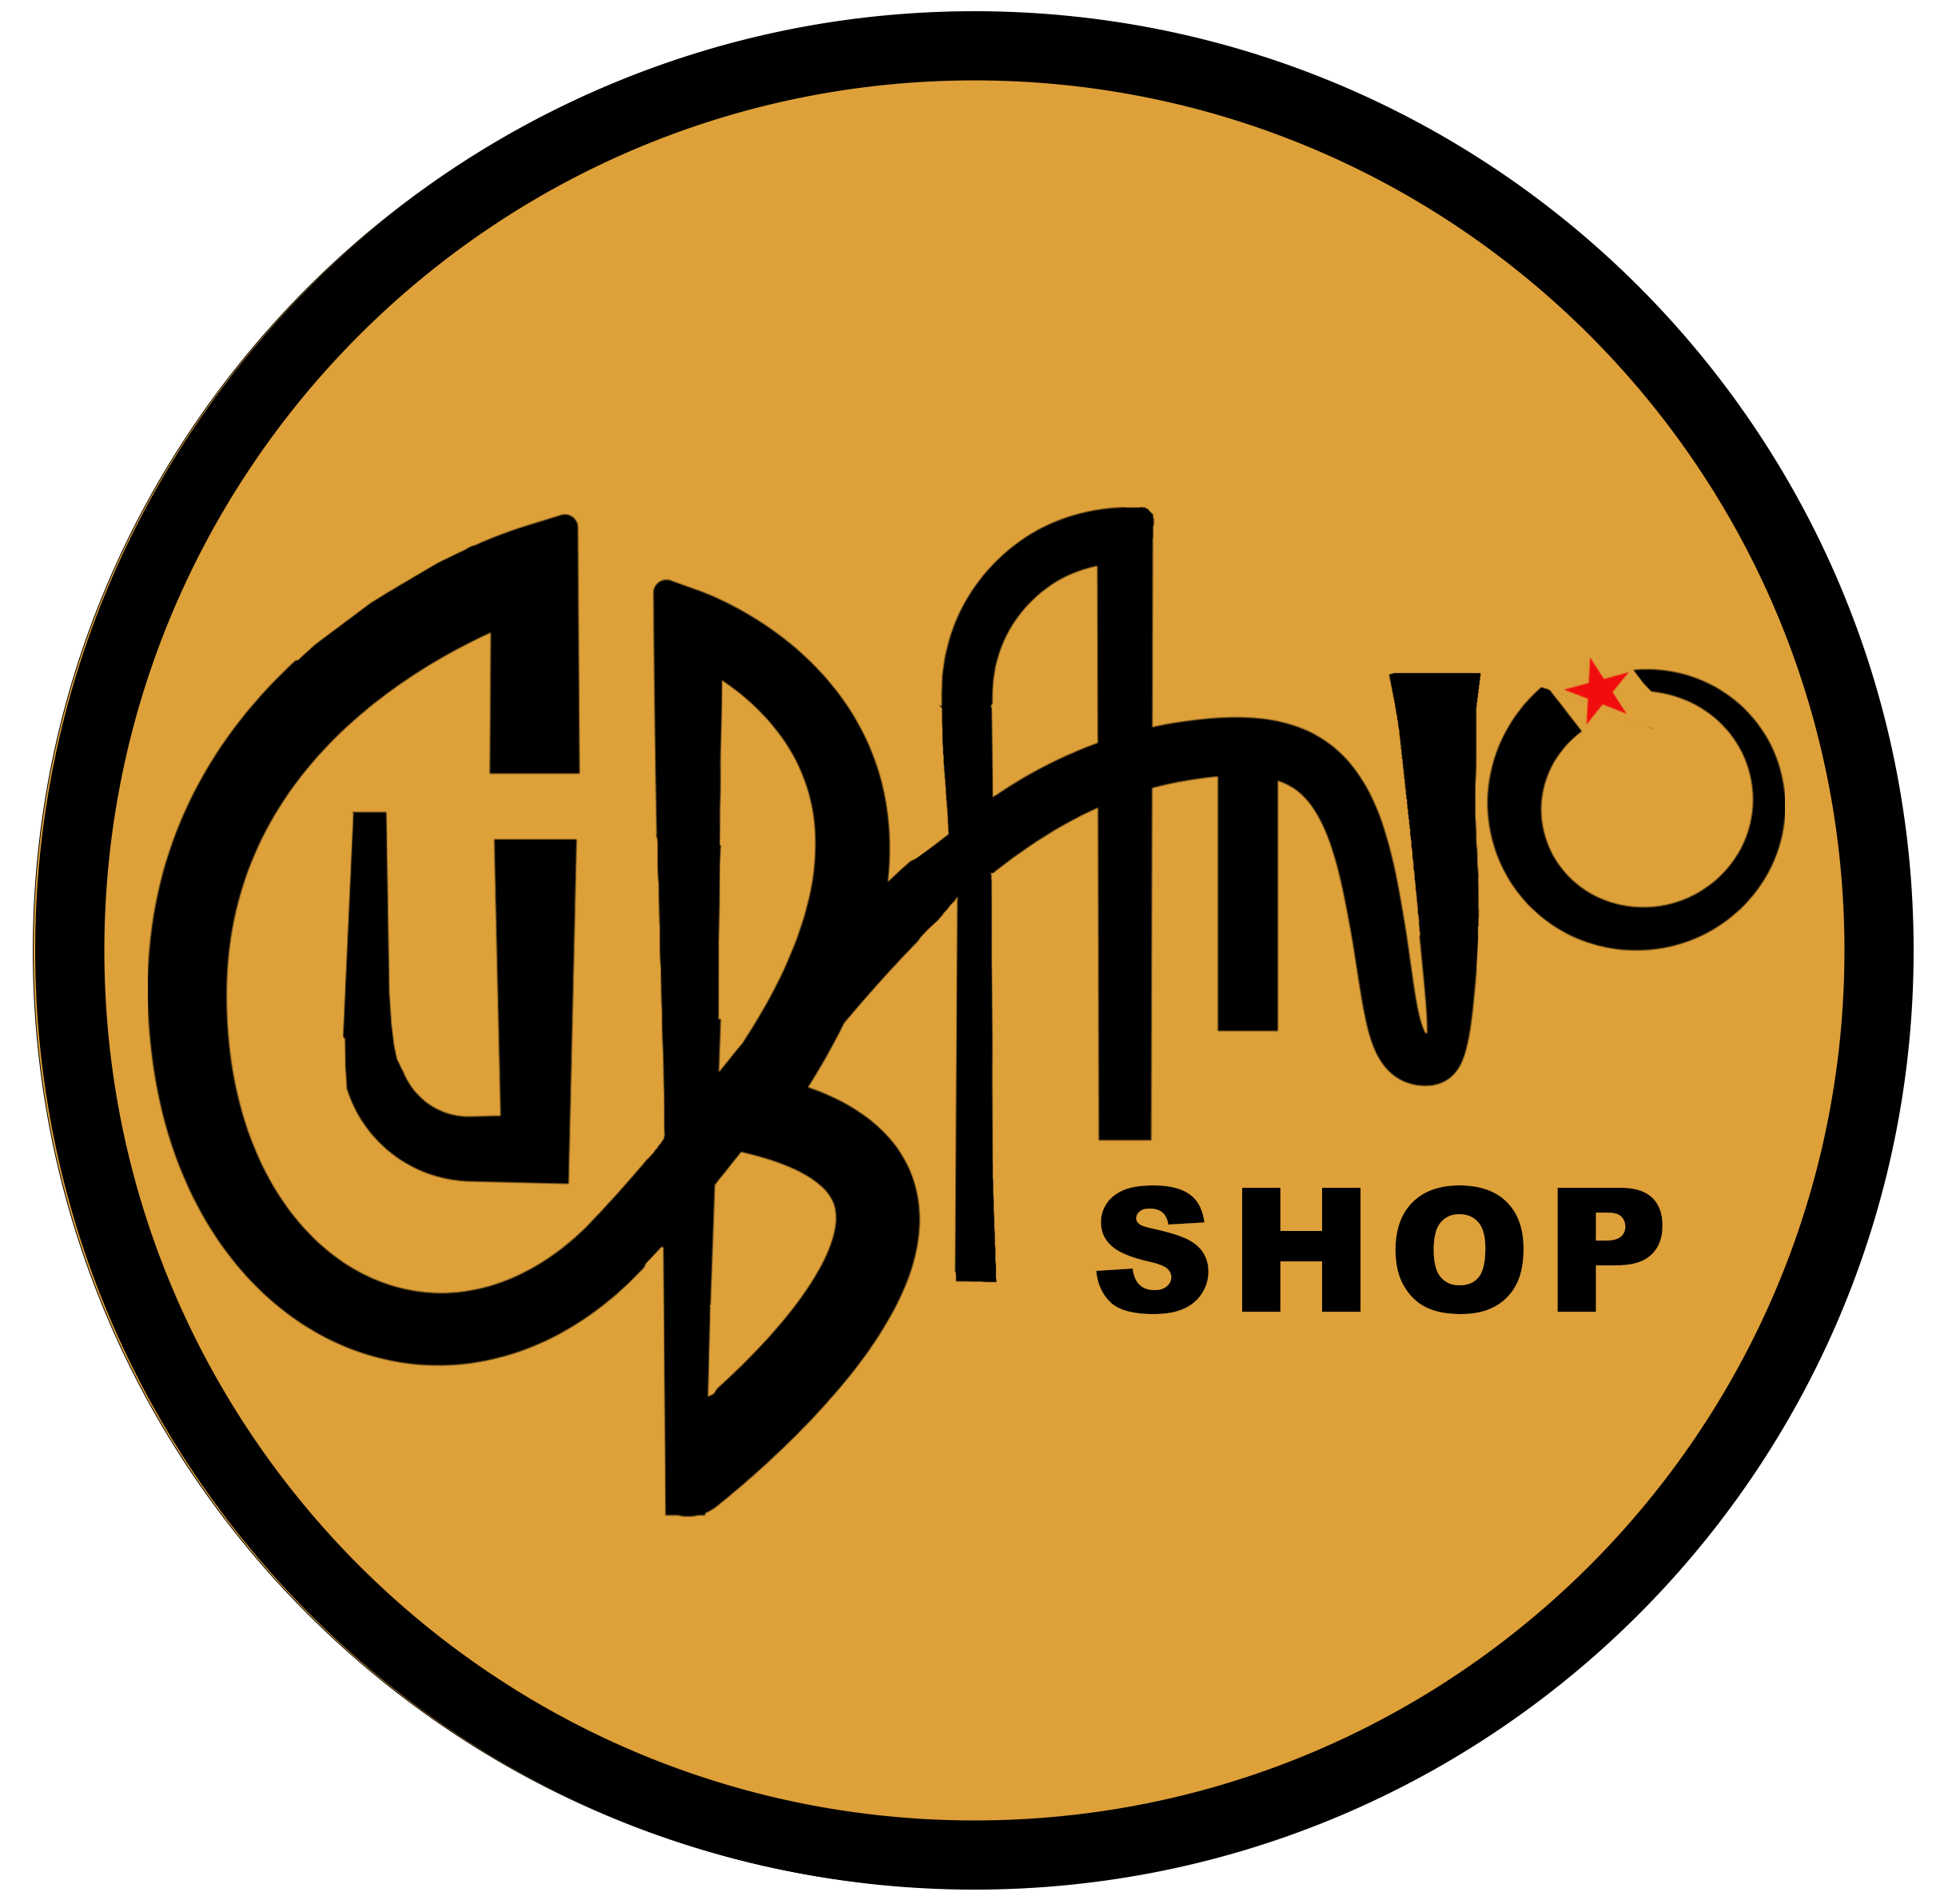 Cubano Shop